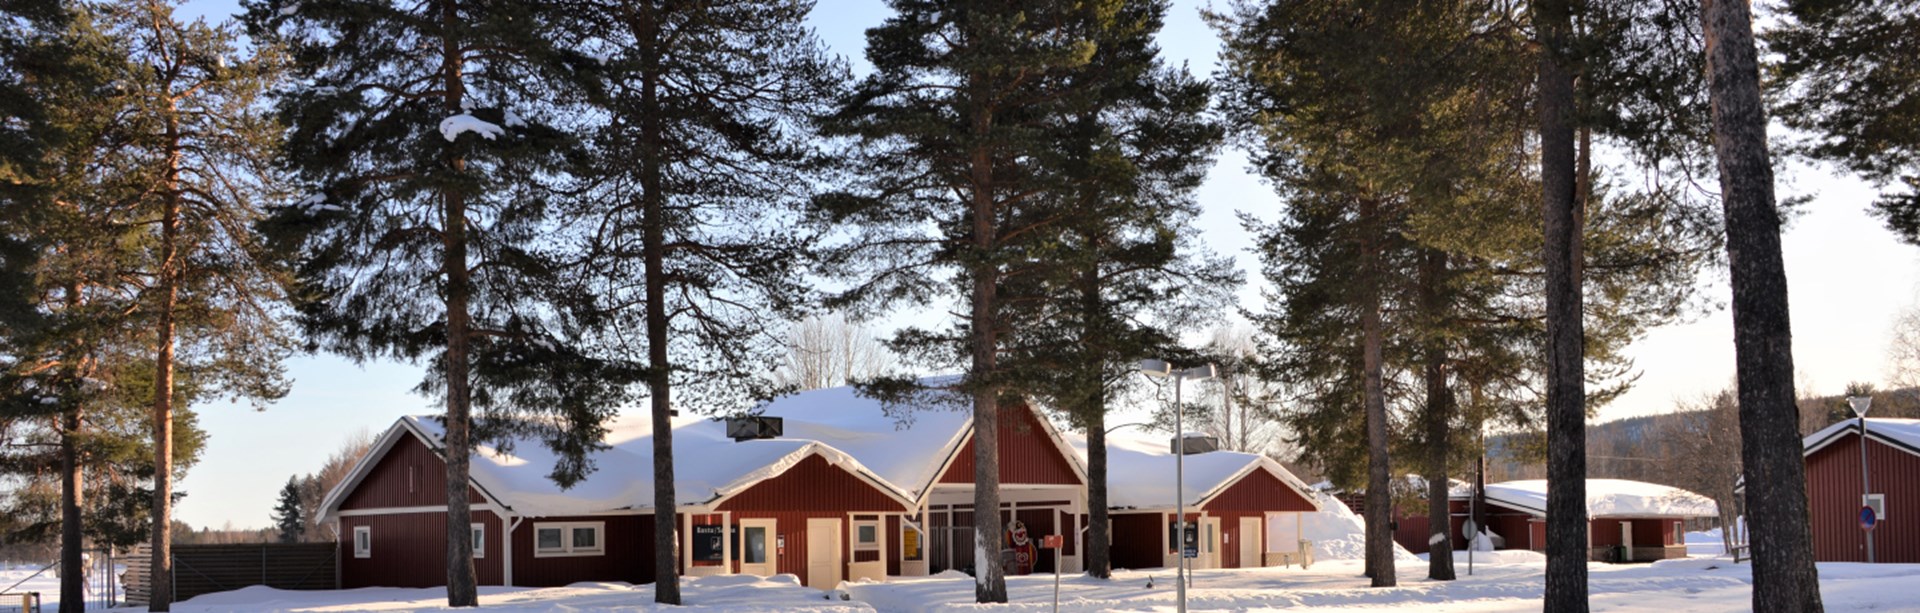 M Sverige – medlemsrabatt på Arctic Camp Jokkmokk